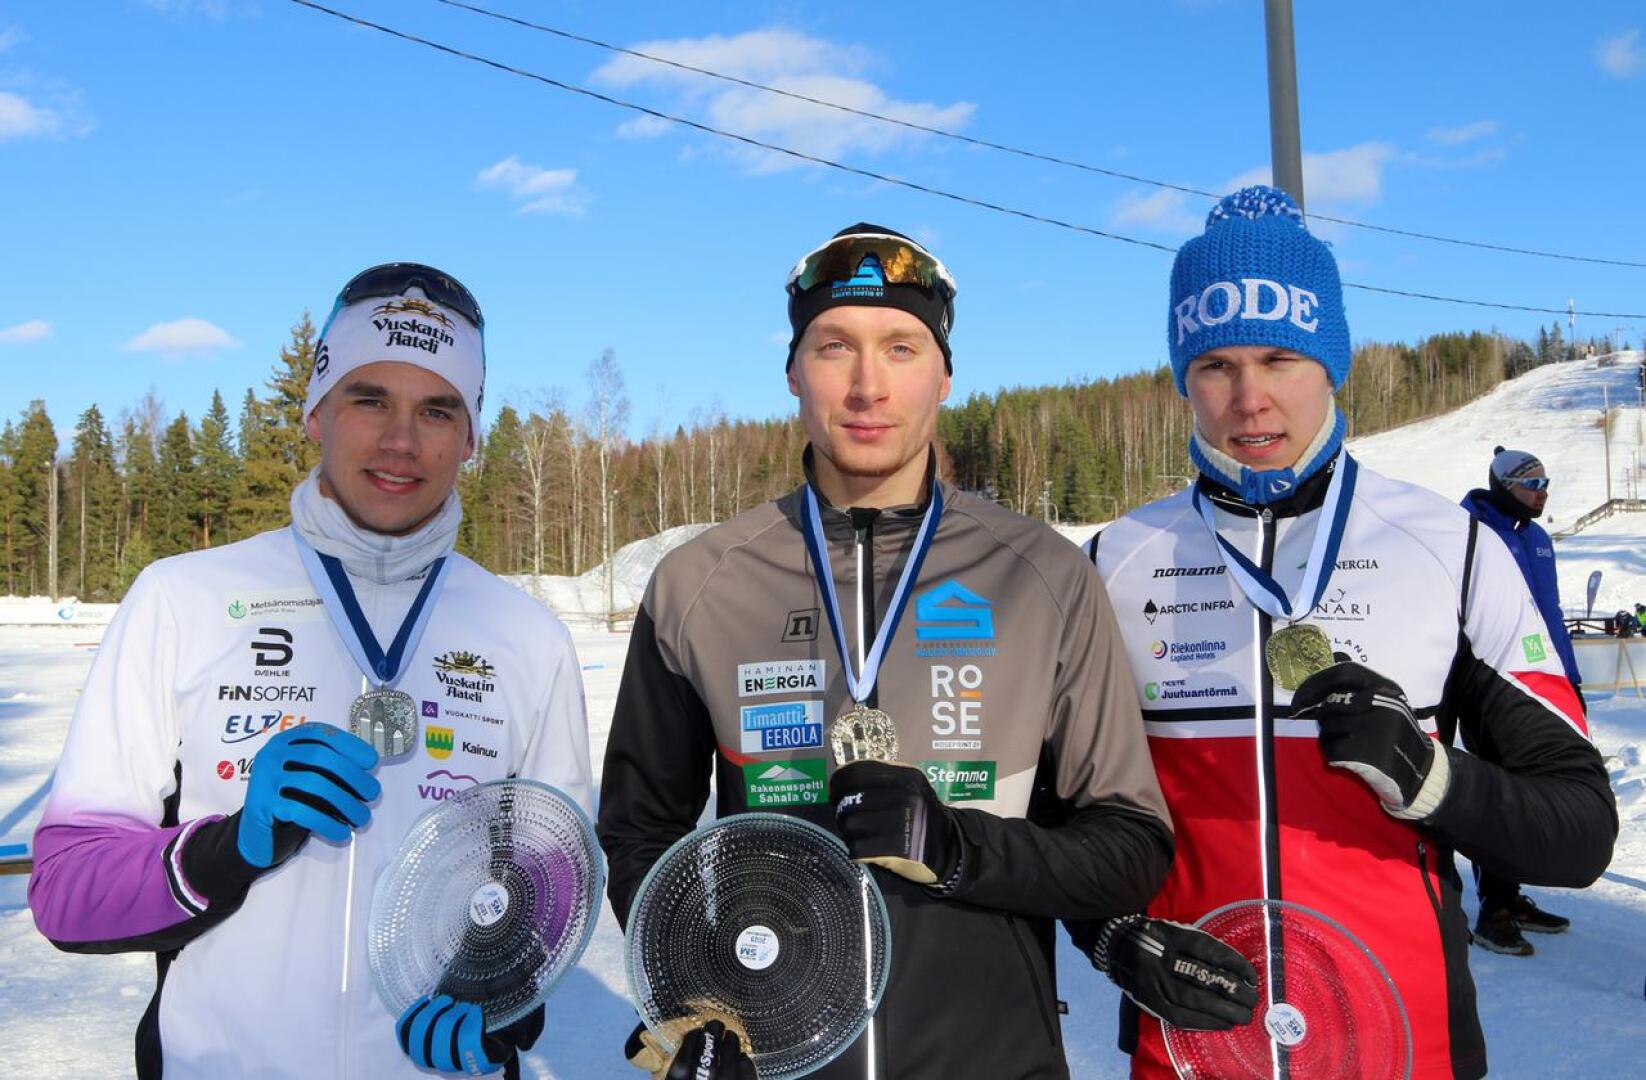 Sievistä lähtöisin oleva Miska Poikkimäki, Vehkaladen Veikkojen Olli-Pekka Laitila sekä Junkkarit-kasvatti Eelis Valikainen olivat kärkikolmikko 23-vuotiaissa.